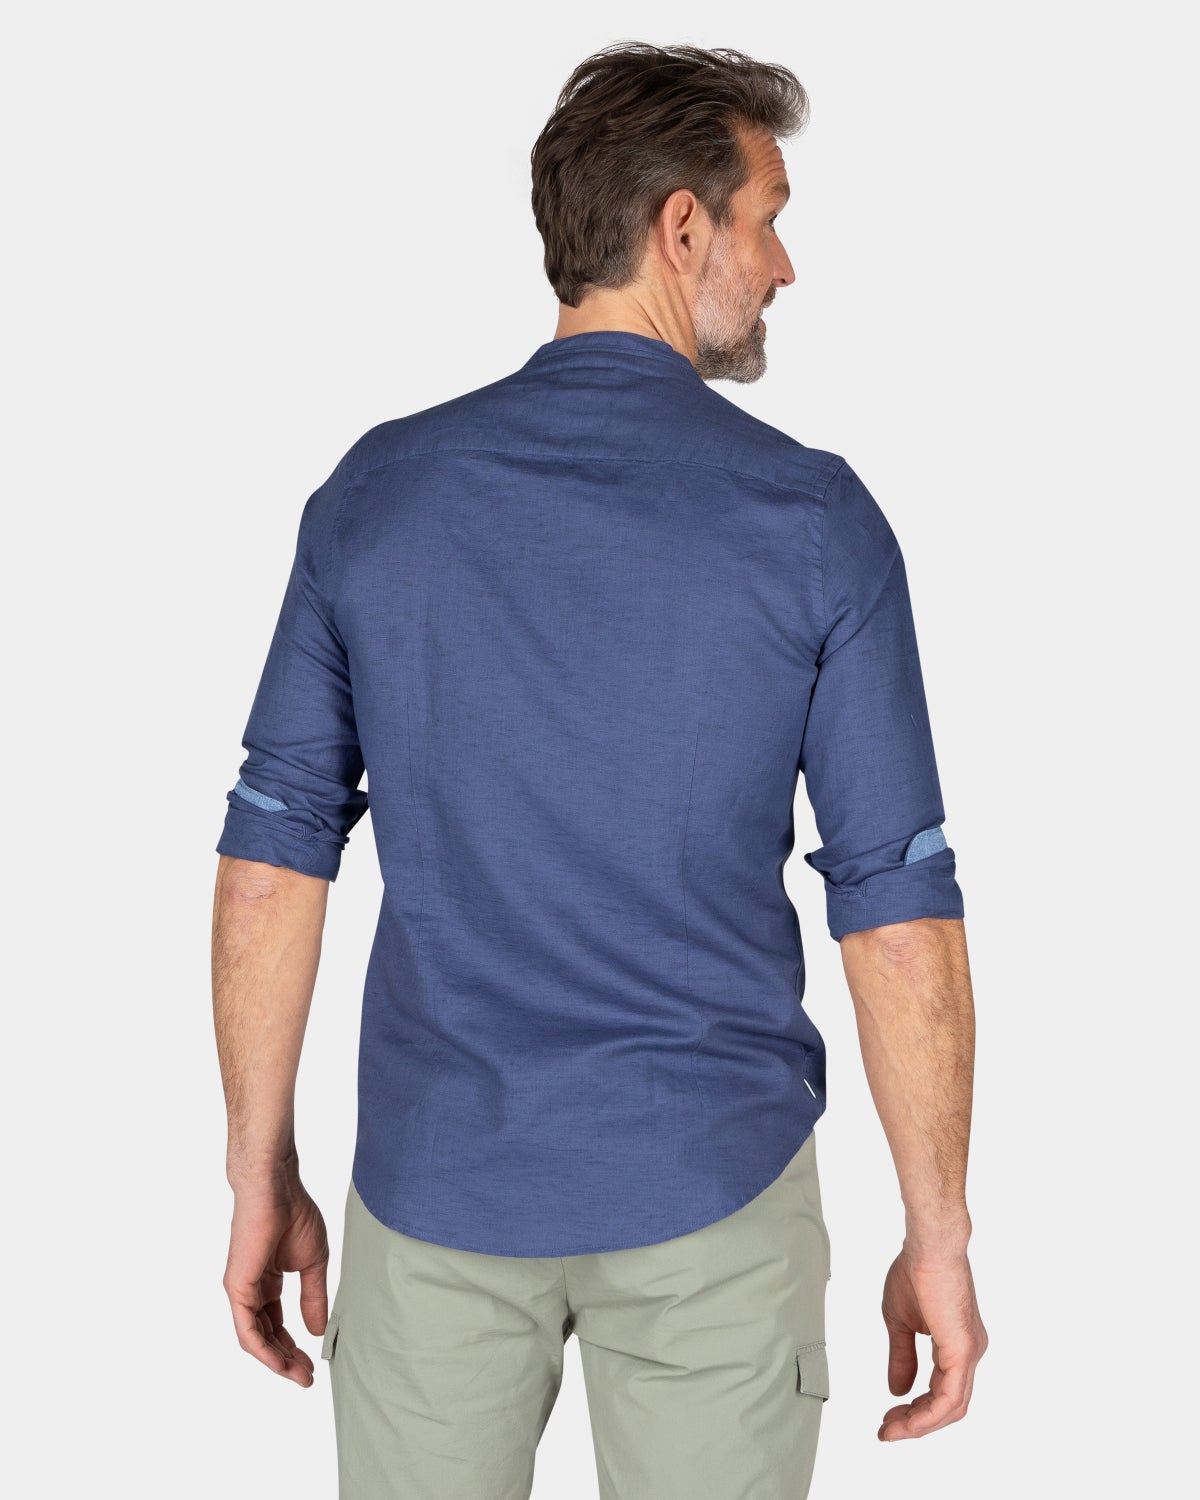 Plain shirt without collar - Dusk Navy